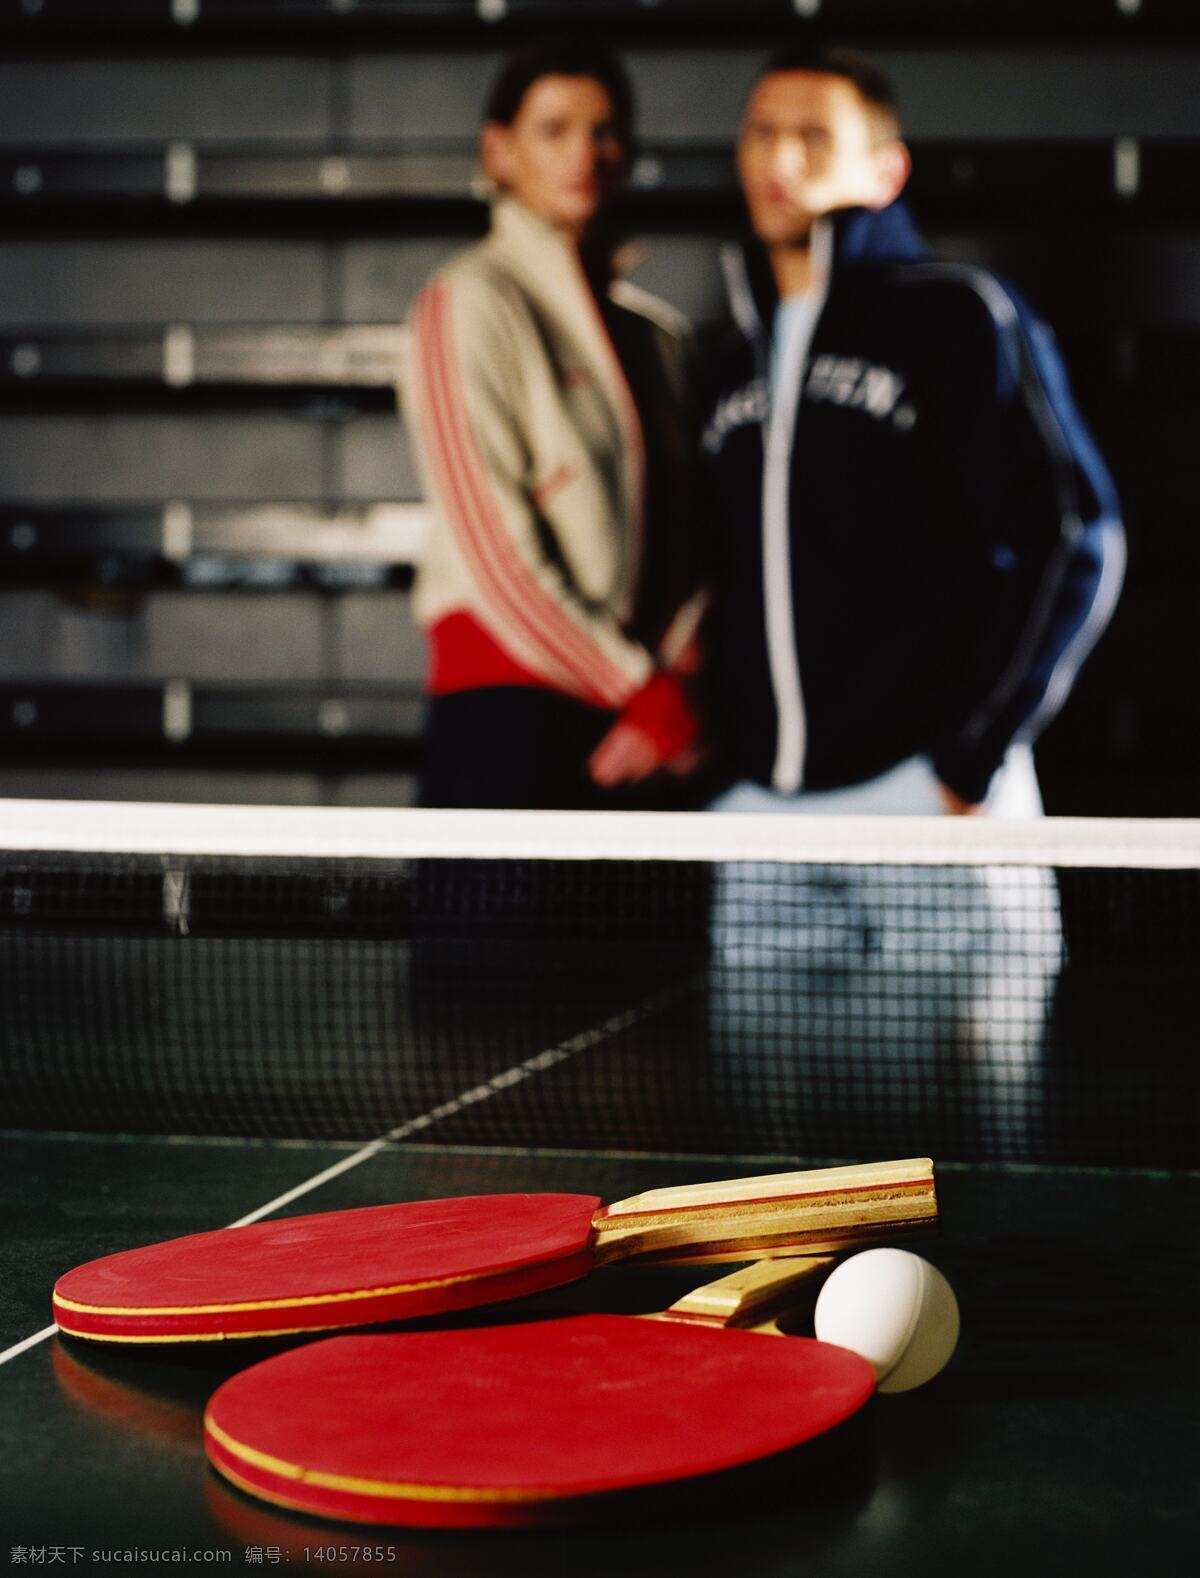 乒乓球运动 素材图片 国外运动 运动人物 运动素材 运动 体育 乒乓球 体育运动 生活百科